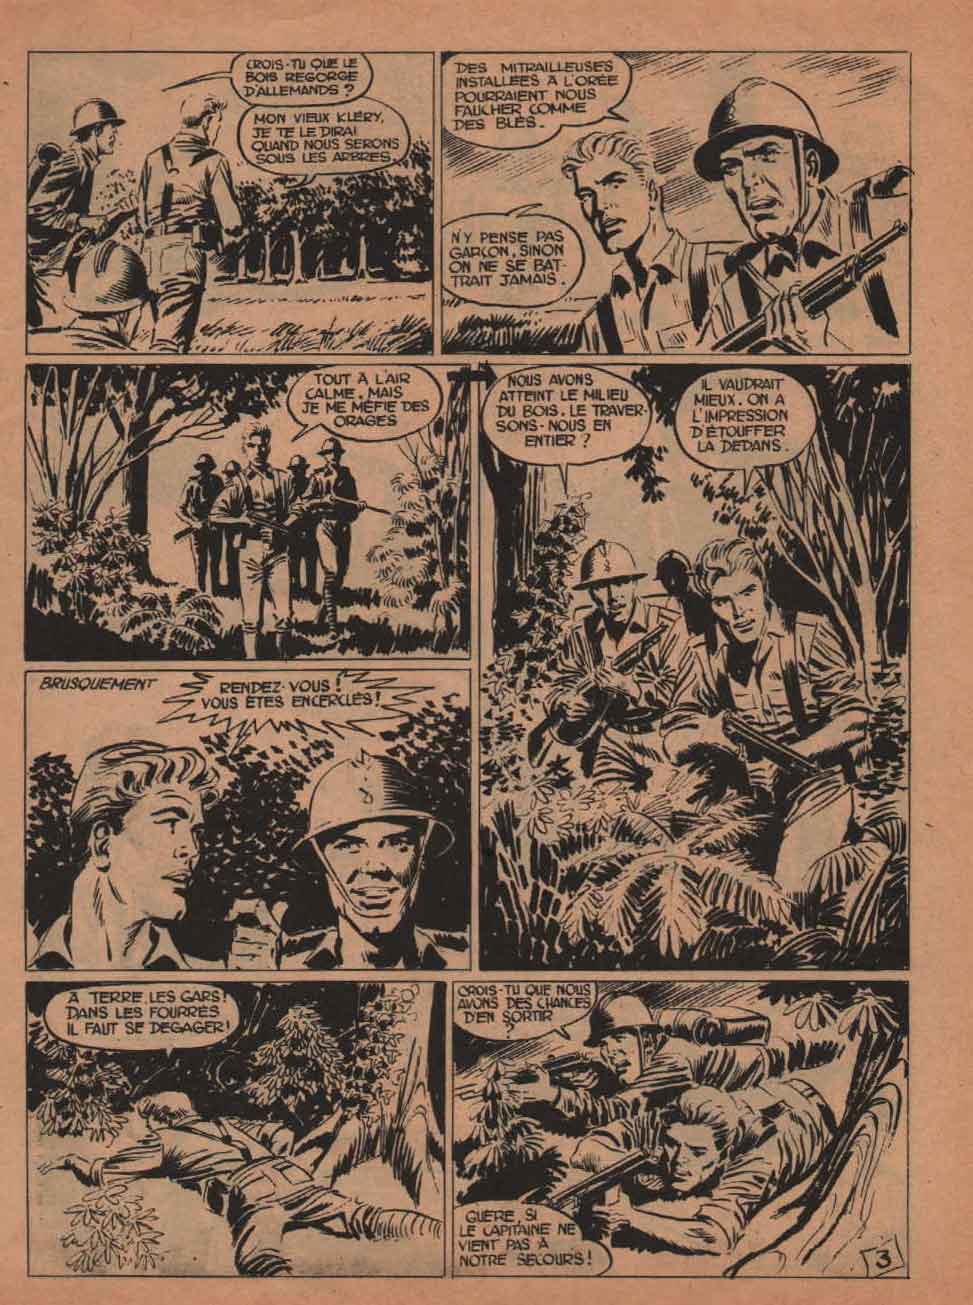 « Tomic » avec Pierre Le Guen : Témaraire n° 31 (04/1960).